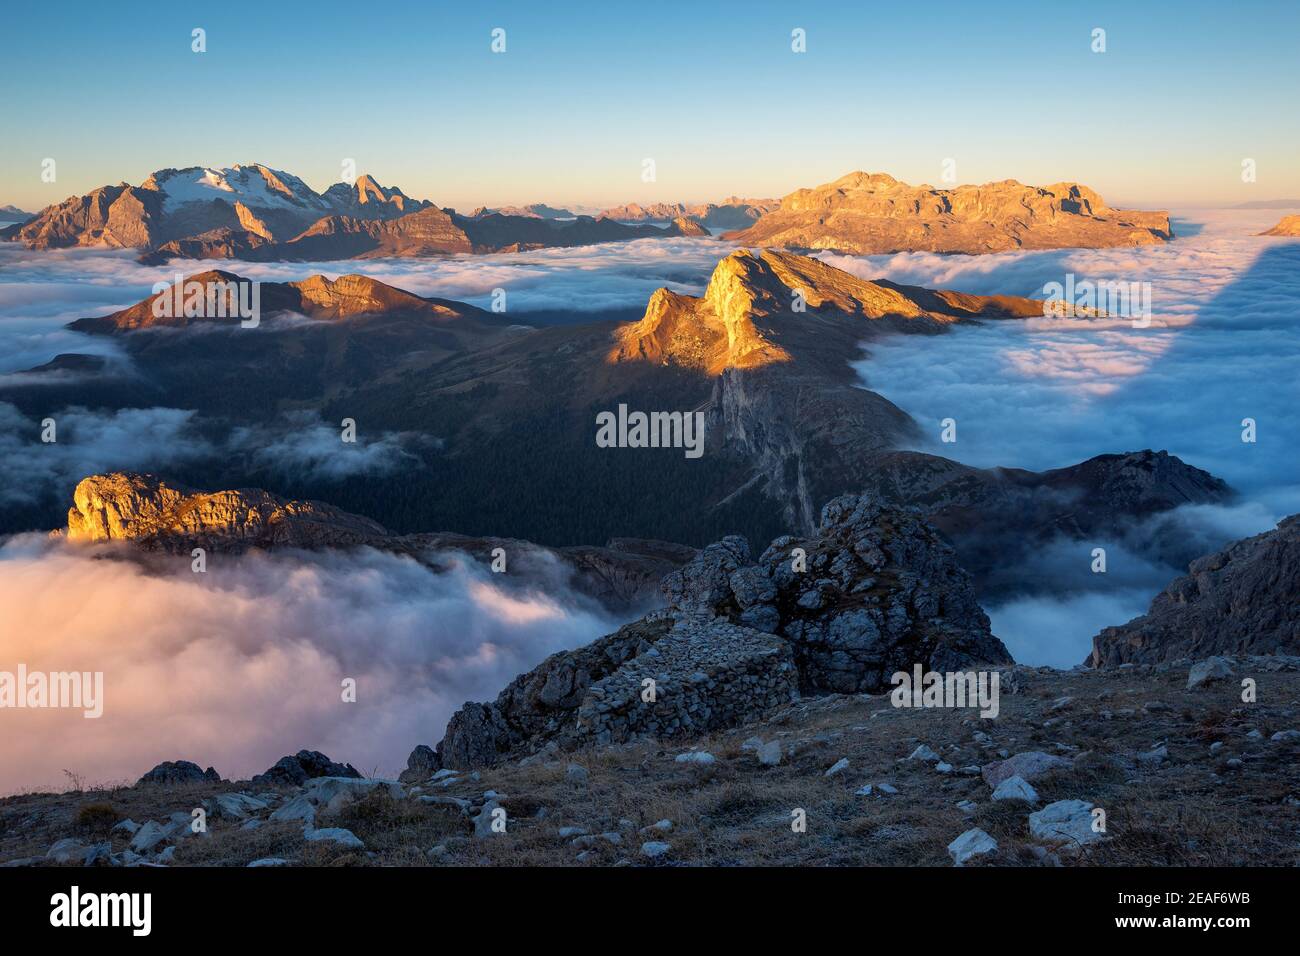 Le Dolomiti all'alba, le nuvole e le vette: Sass de Stria, Settsass, Sella, le vette della Marmolada. Alpi Italiane. Europa. Foto Stock